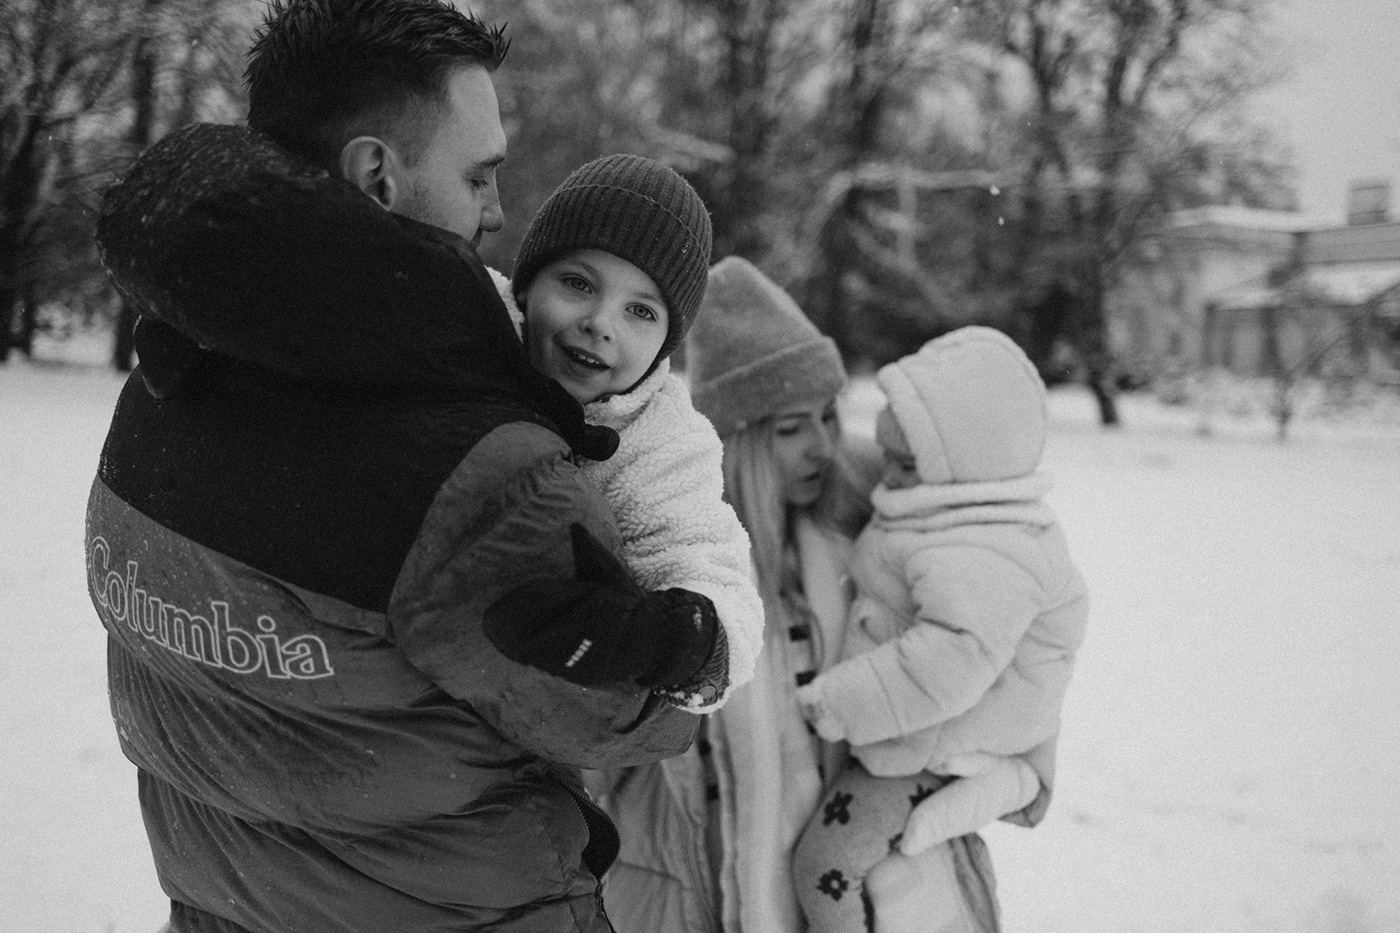 family familyphotoshoot Love naturalphotography  photographer Photography  winter winterphotoshoot